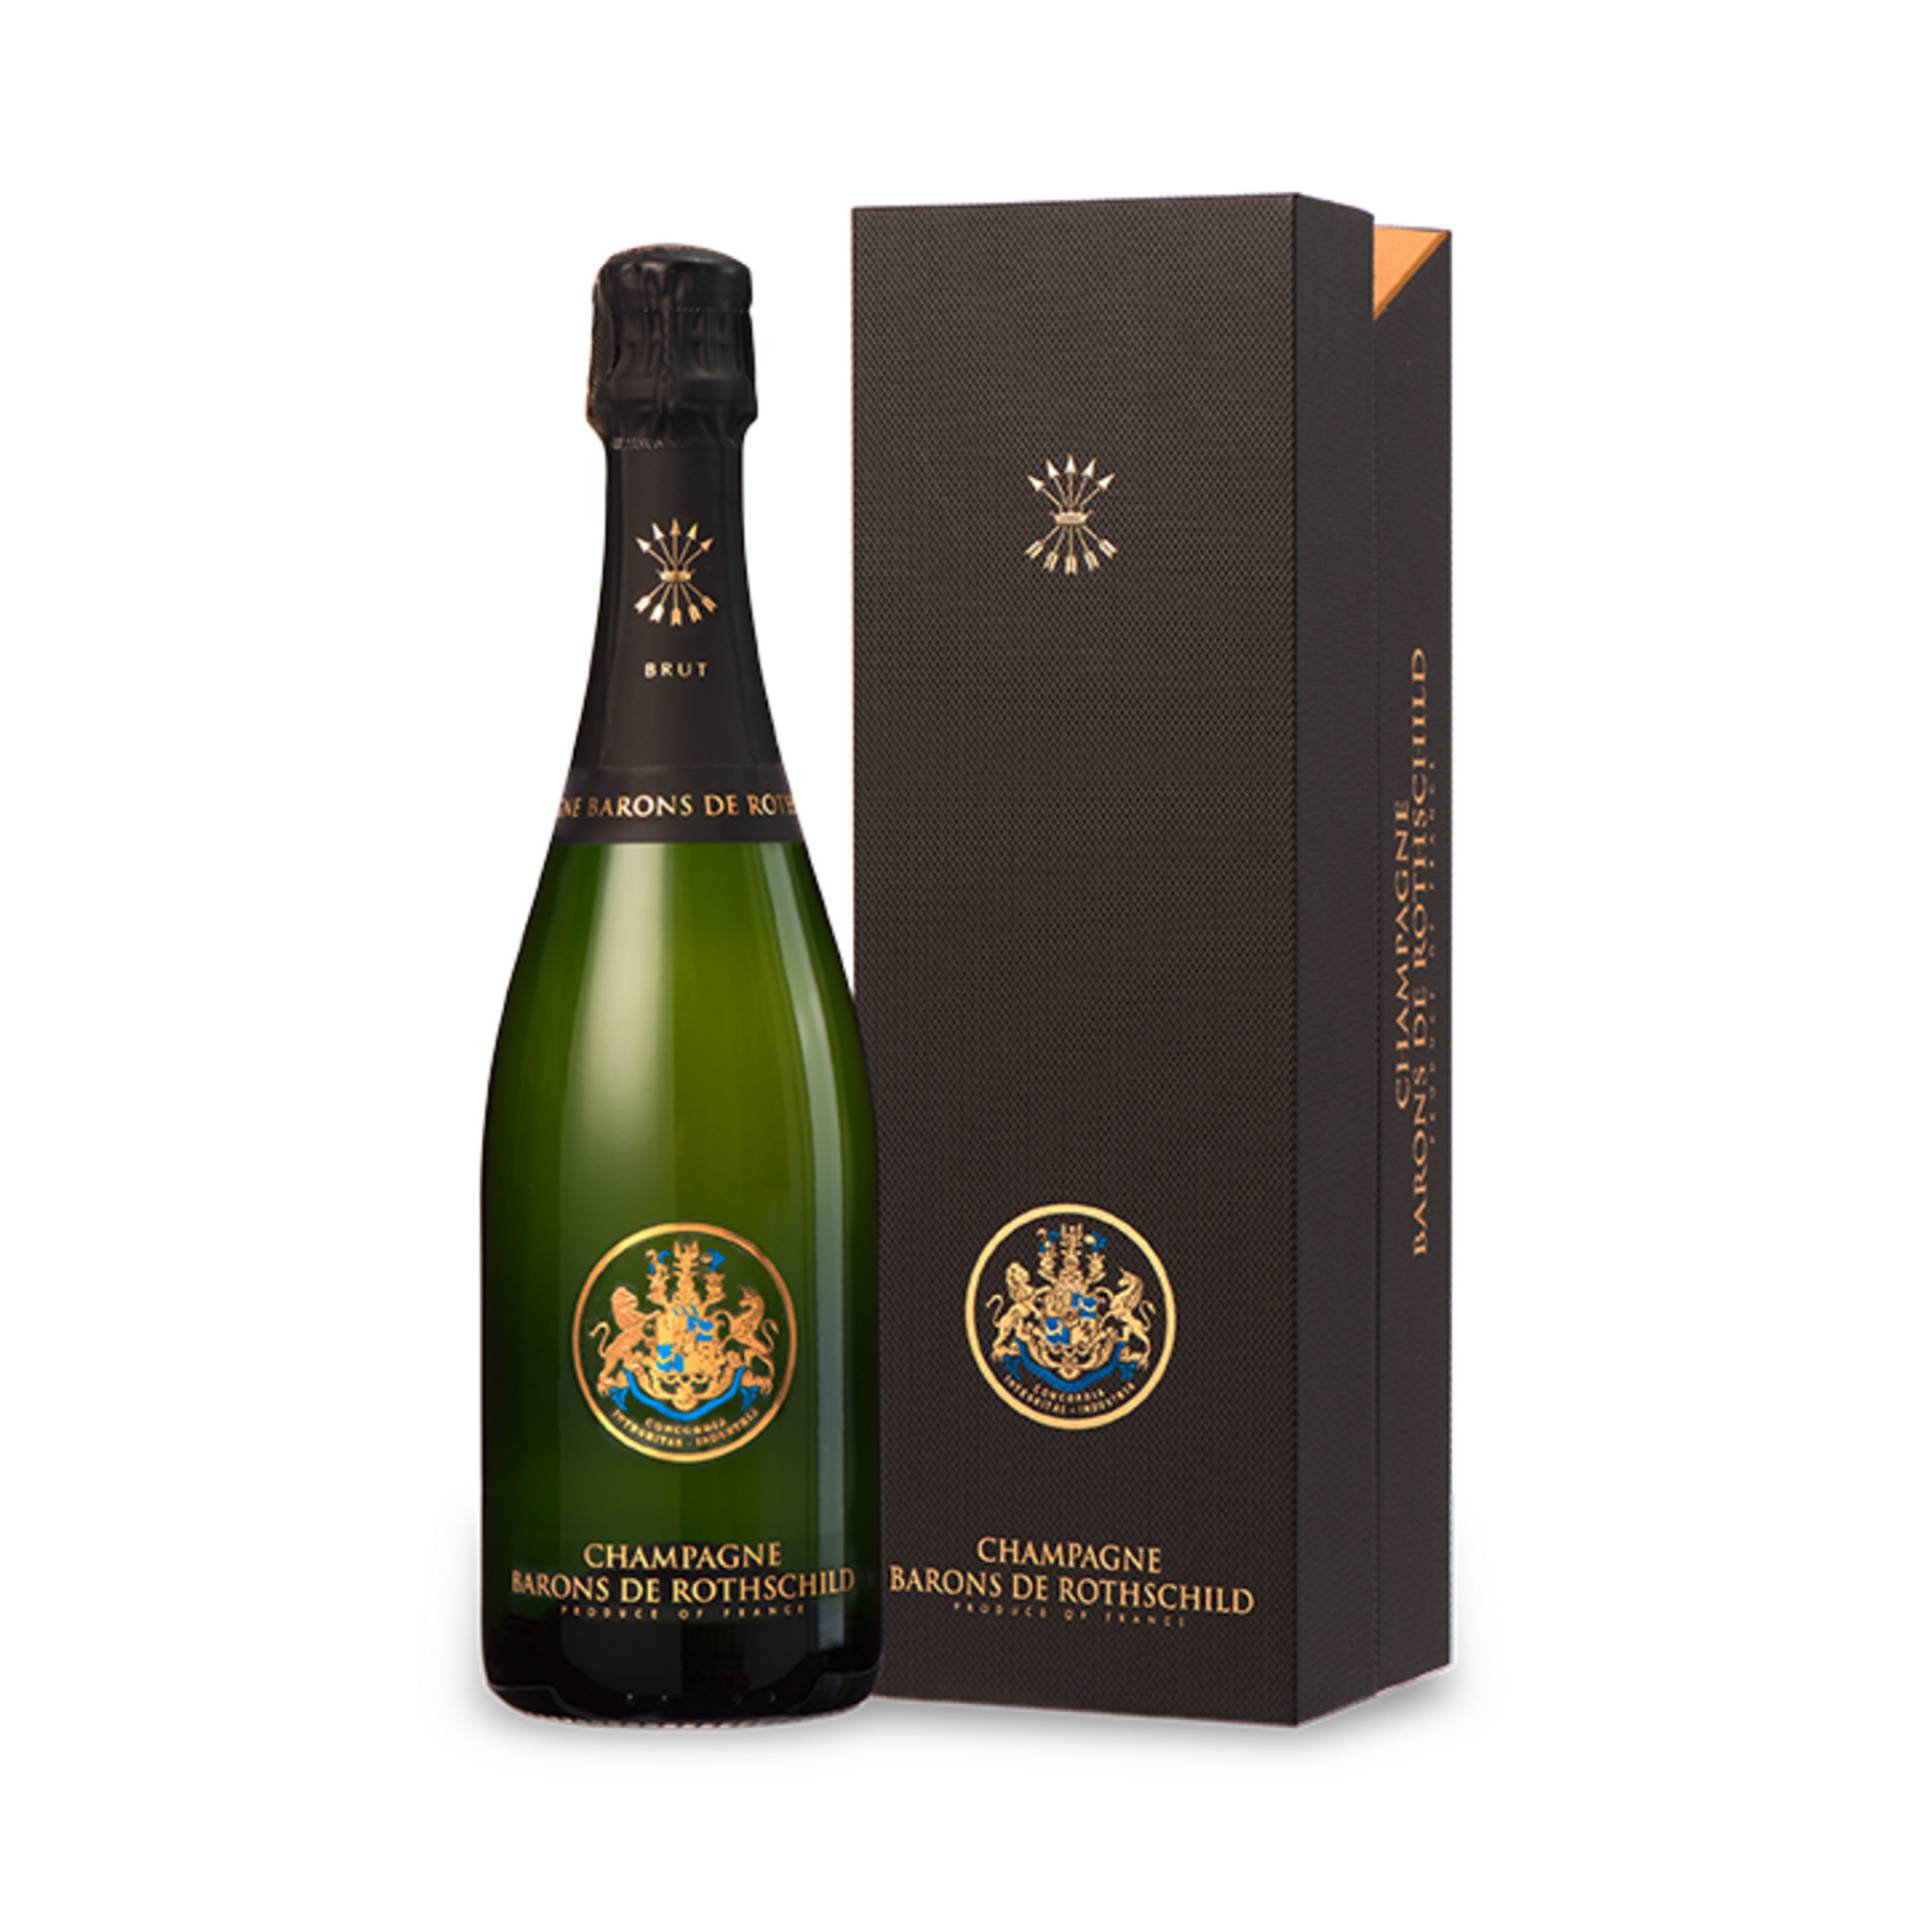 Champagne Barons de Rothschild, Brut, Champagne AC, Geschenketui, Champagne, Schaumwein von Société Champenoise des Barons et Associés SAS, 51100 Reims, France